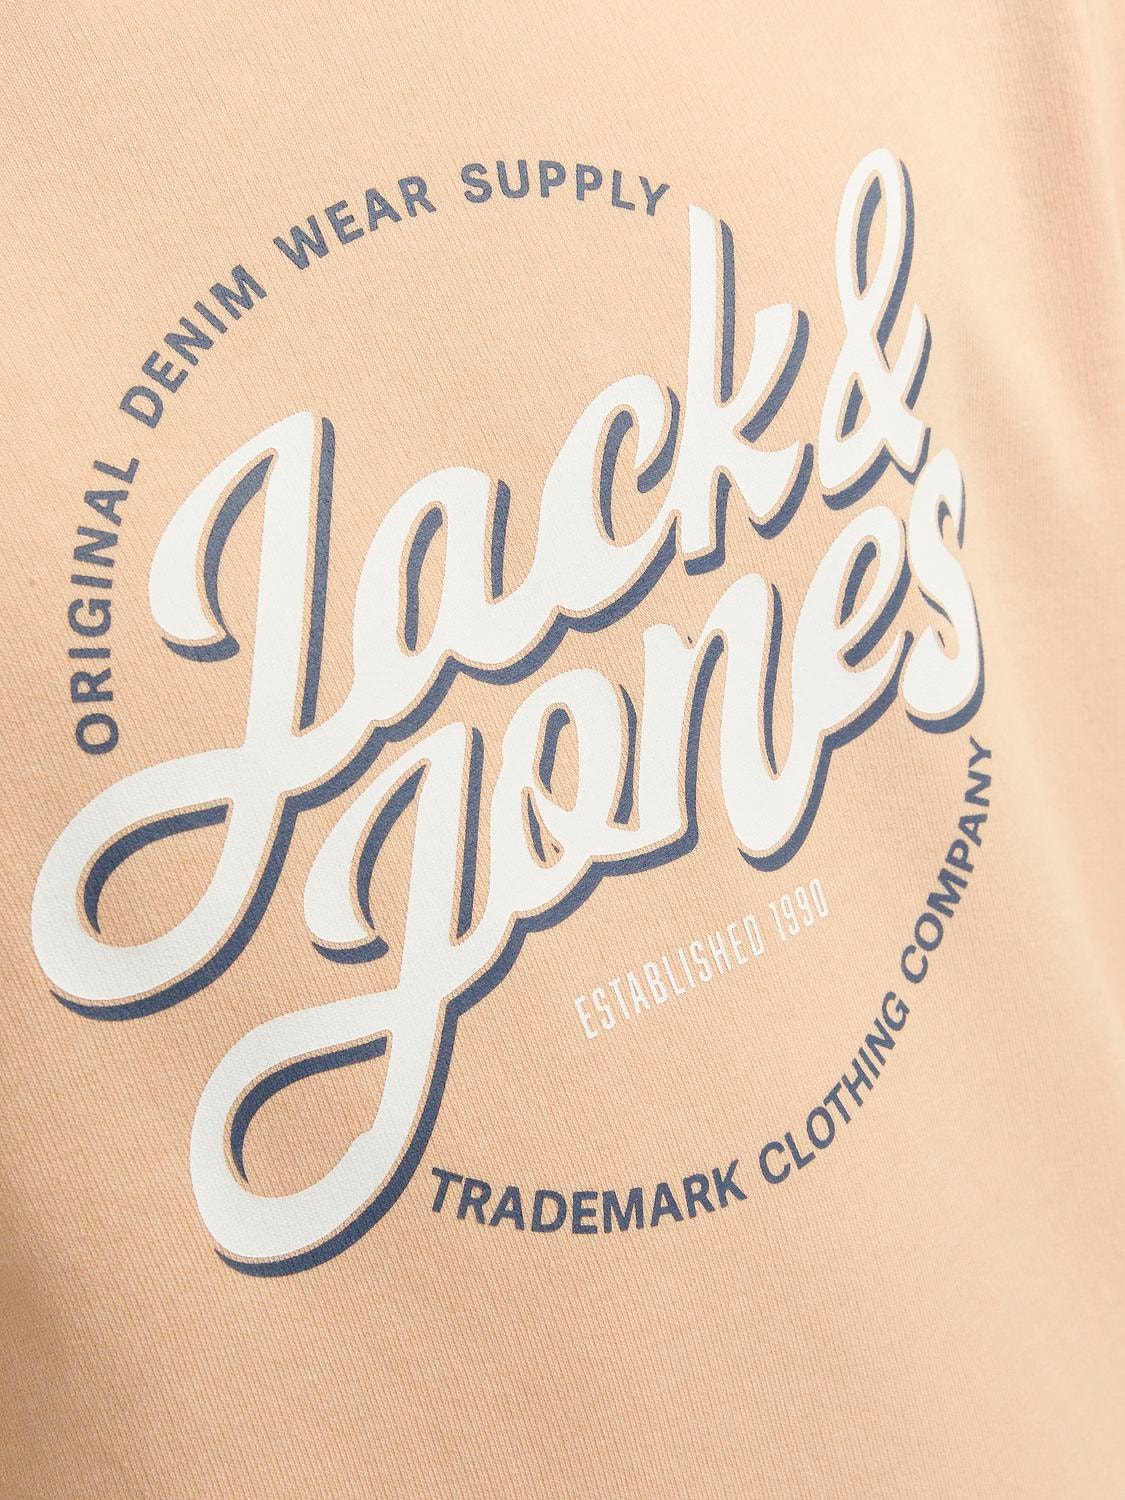 Jack & Jones Gedrukt Sweatshirt met ronde hals Voor jongens -Apricot Ice  - 12255256